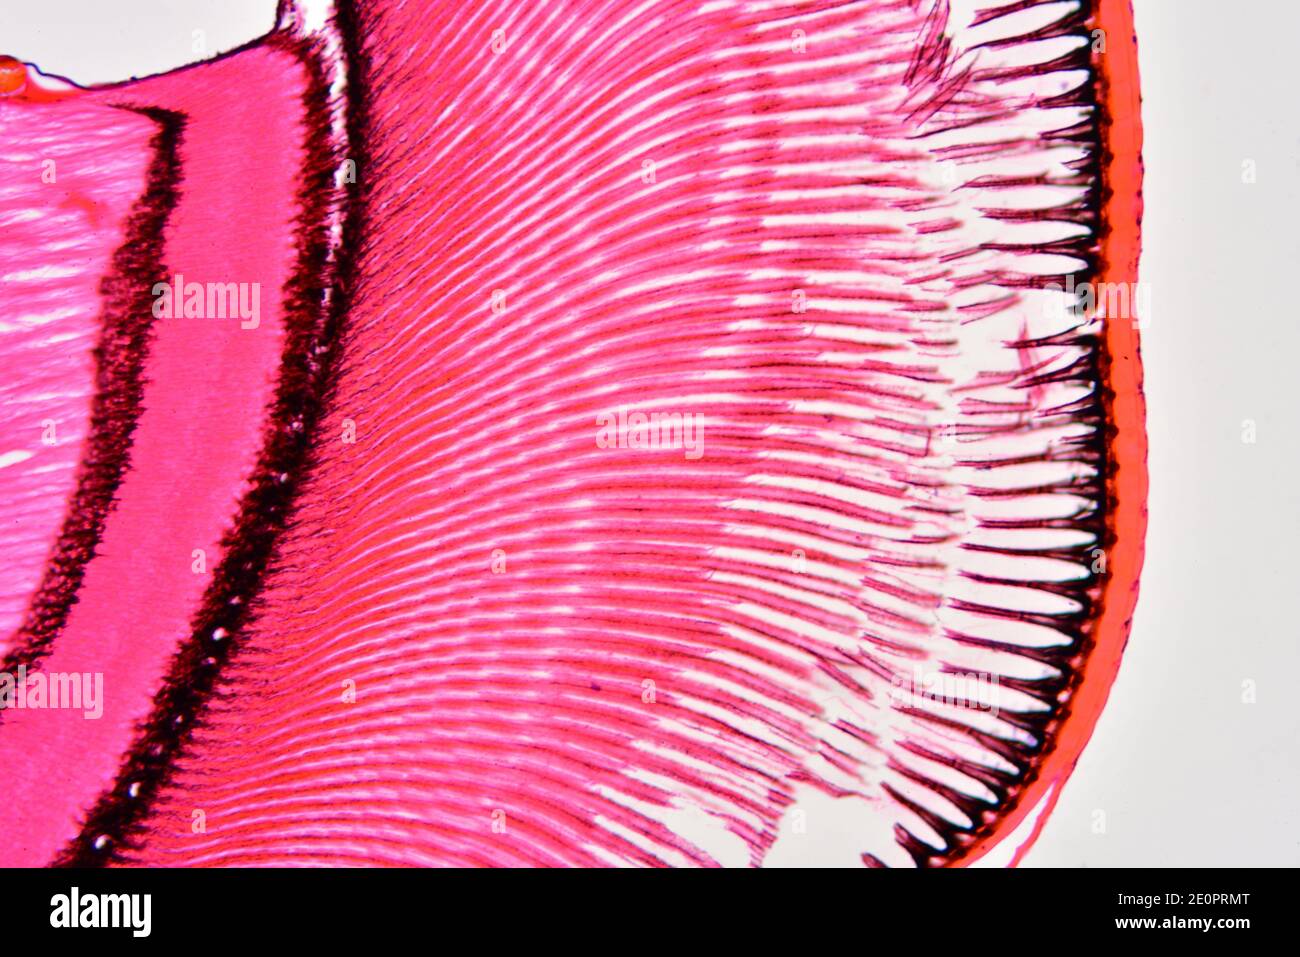 Occhio composto di insetto che mostra da destra a sinistra: Lenti, coni cristallini, cellule di pigmento primario, rabdom, cellule di retinula, cellule di pigmento secundario Foto Stock